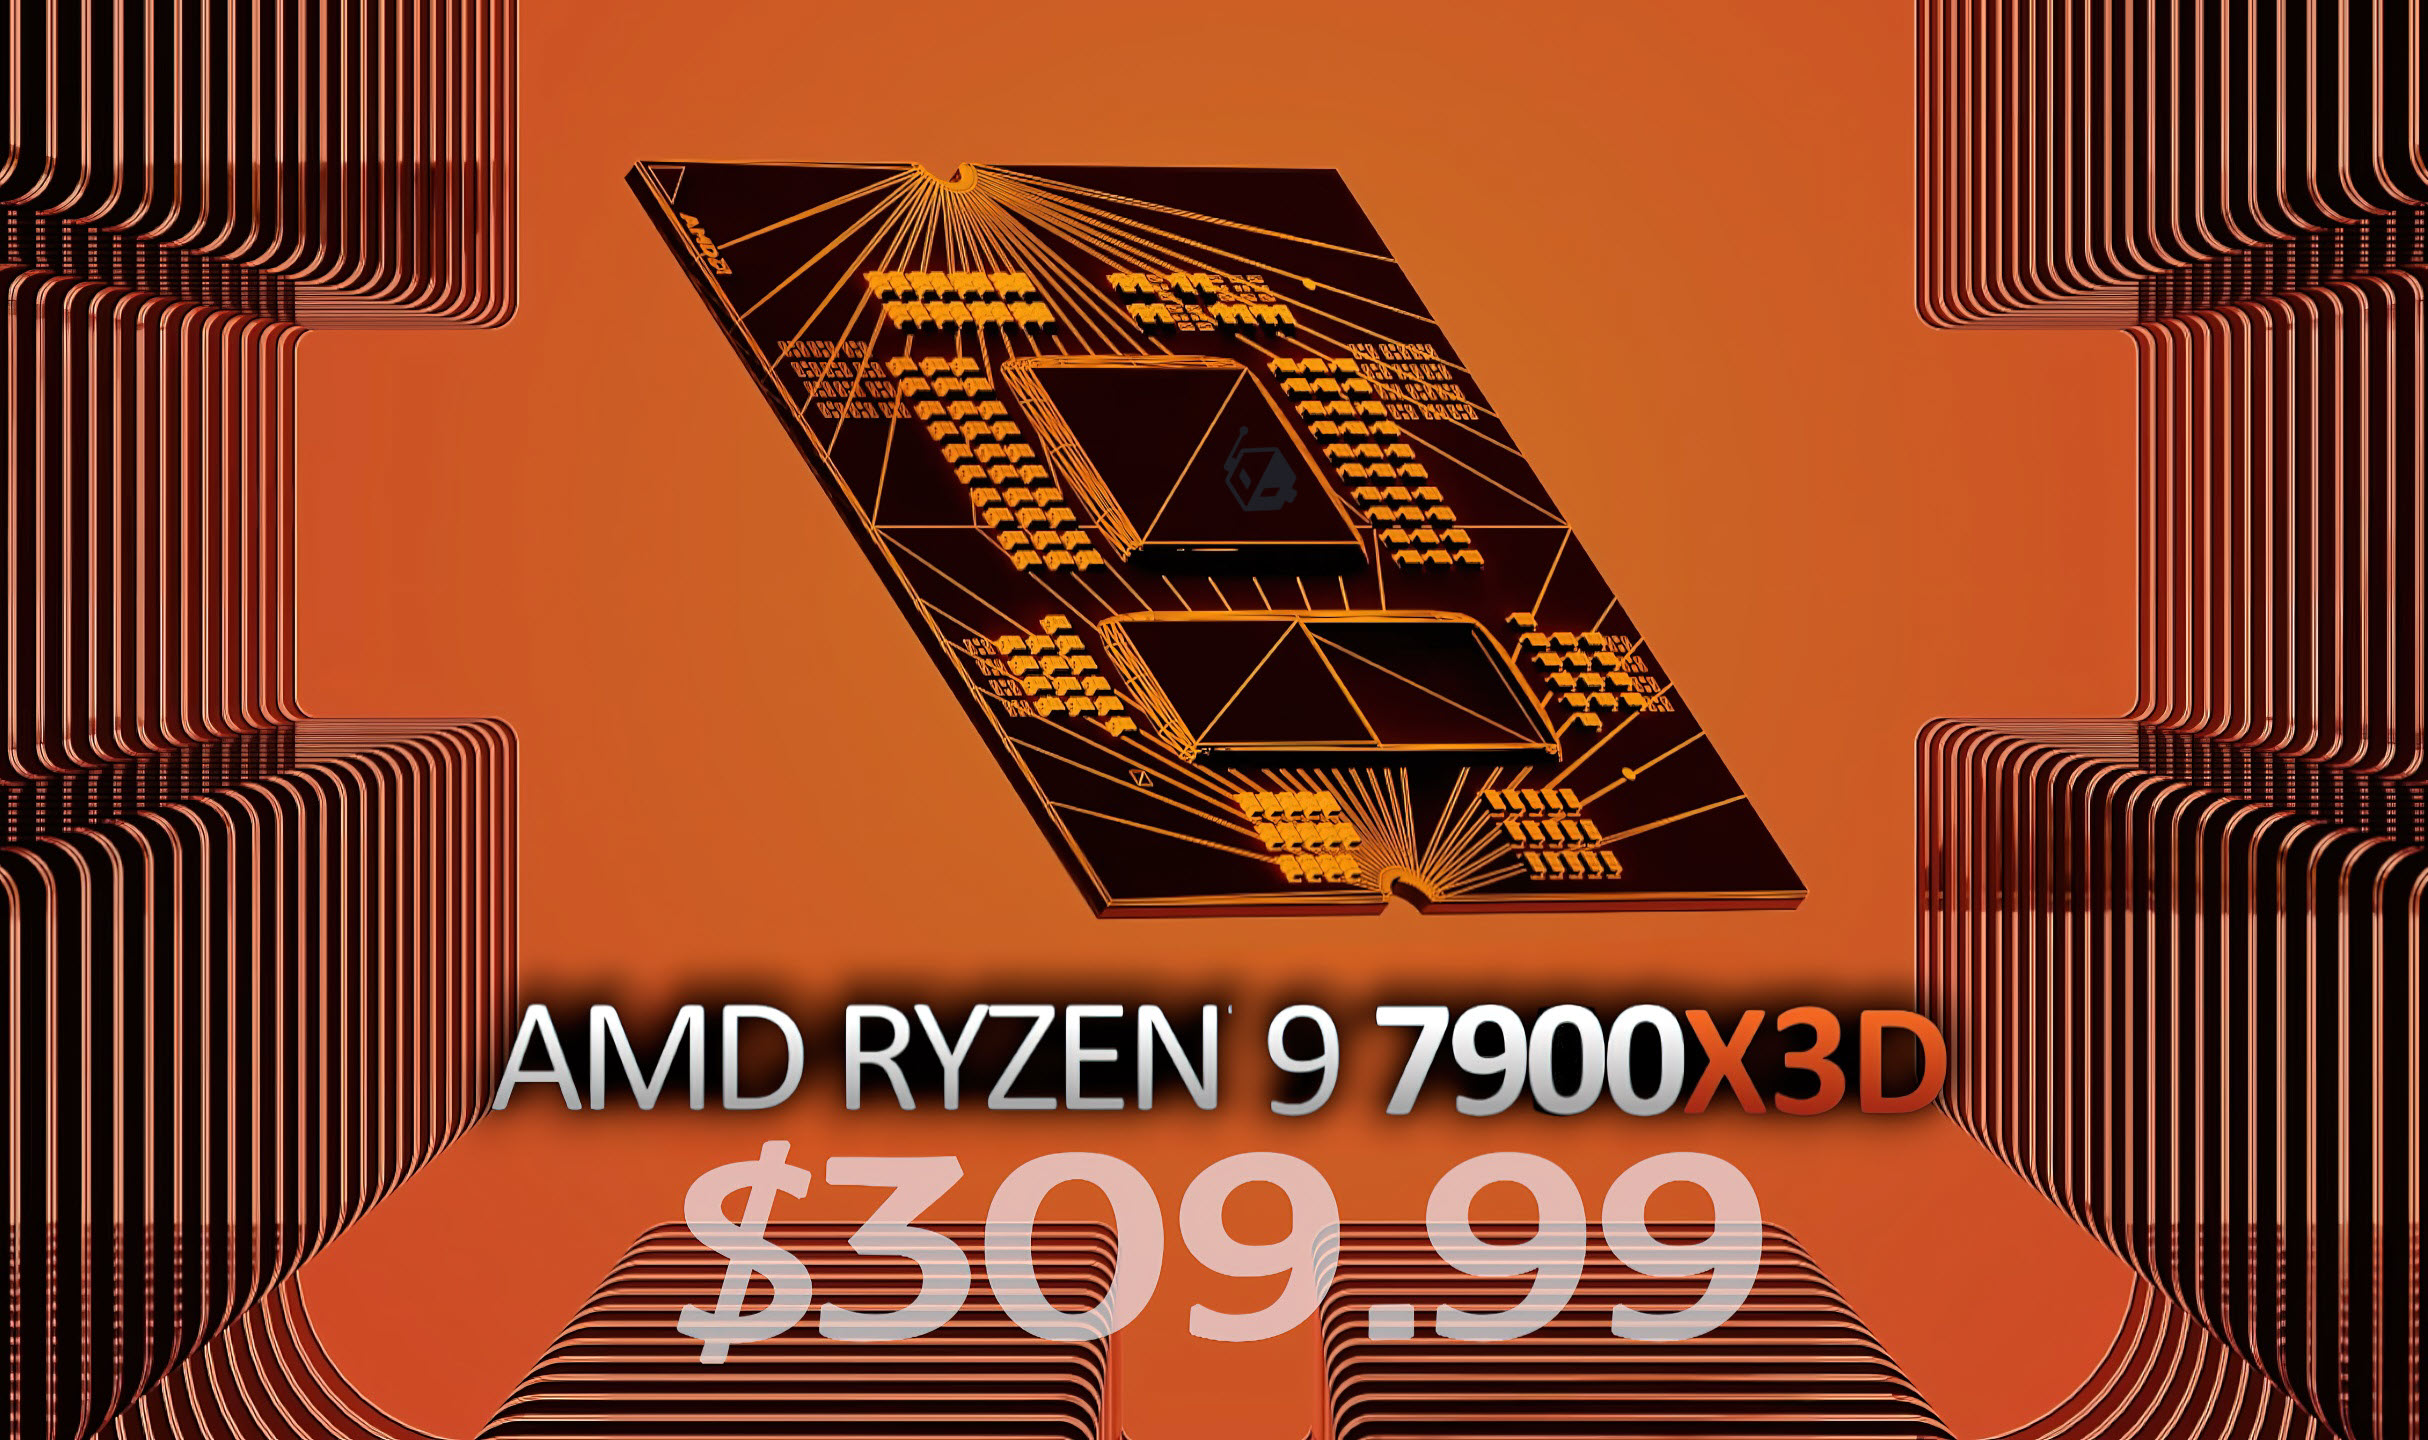 CPU 3D V-Cache 12 هسته ای AMD Ryzen 9 7900X3D به 309 دلار کاهش می یابد، یک ارزش عالی برای یک تراشه رده بالا